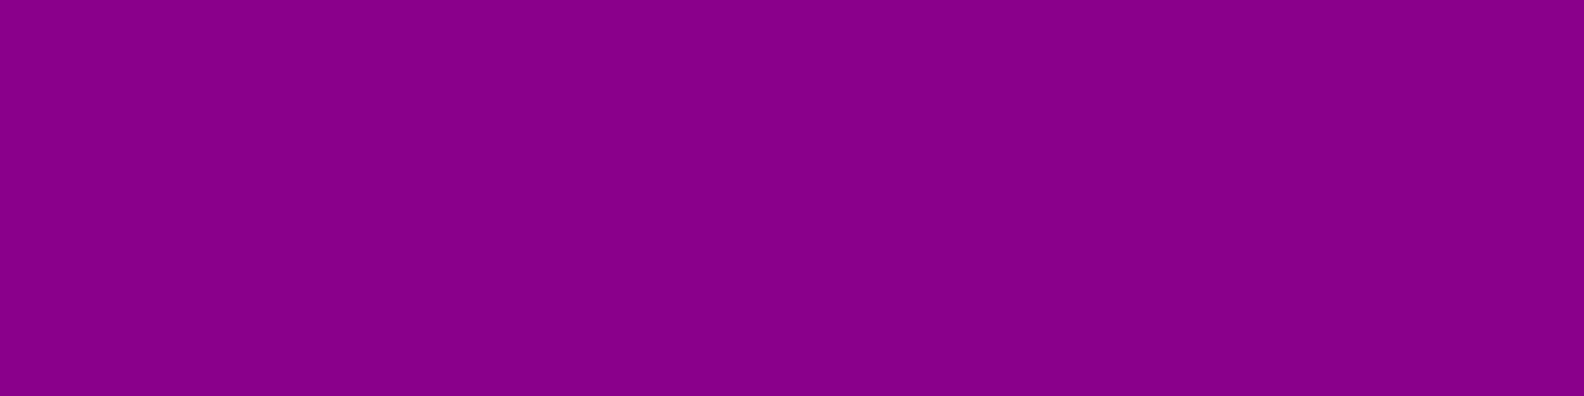 1584x396 Dark Magenta Solid Color Background